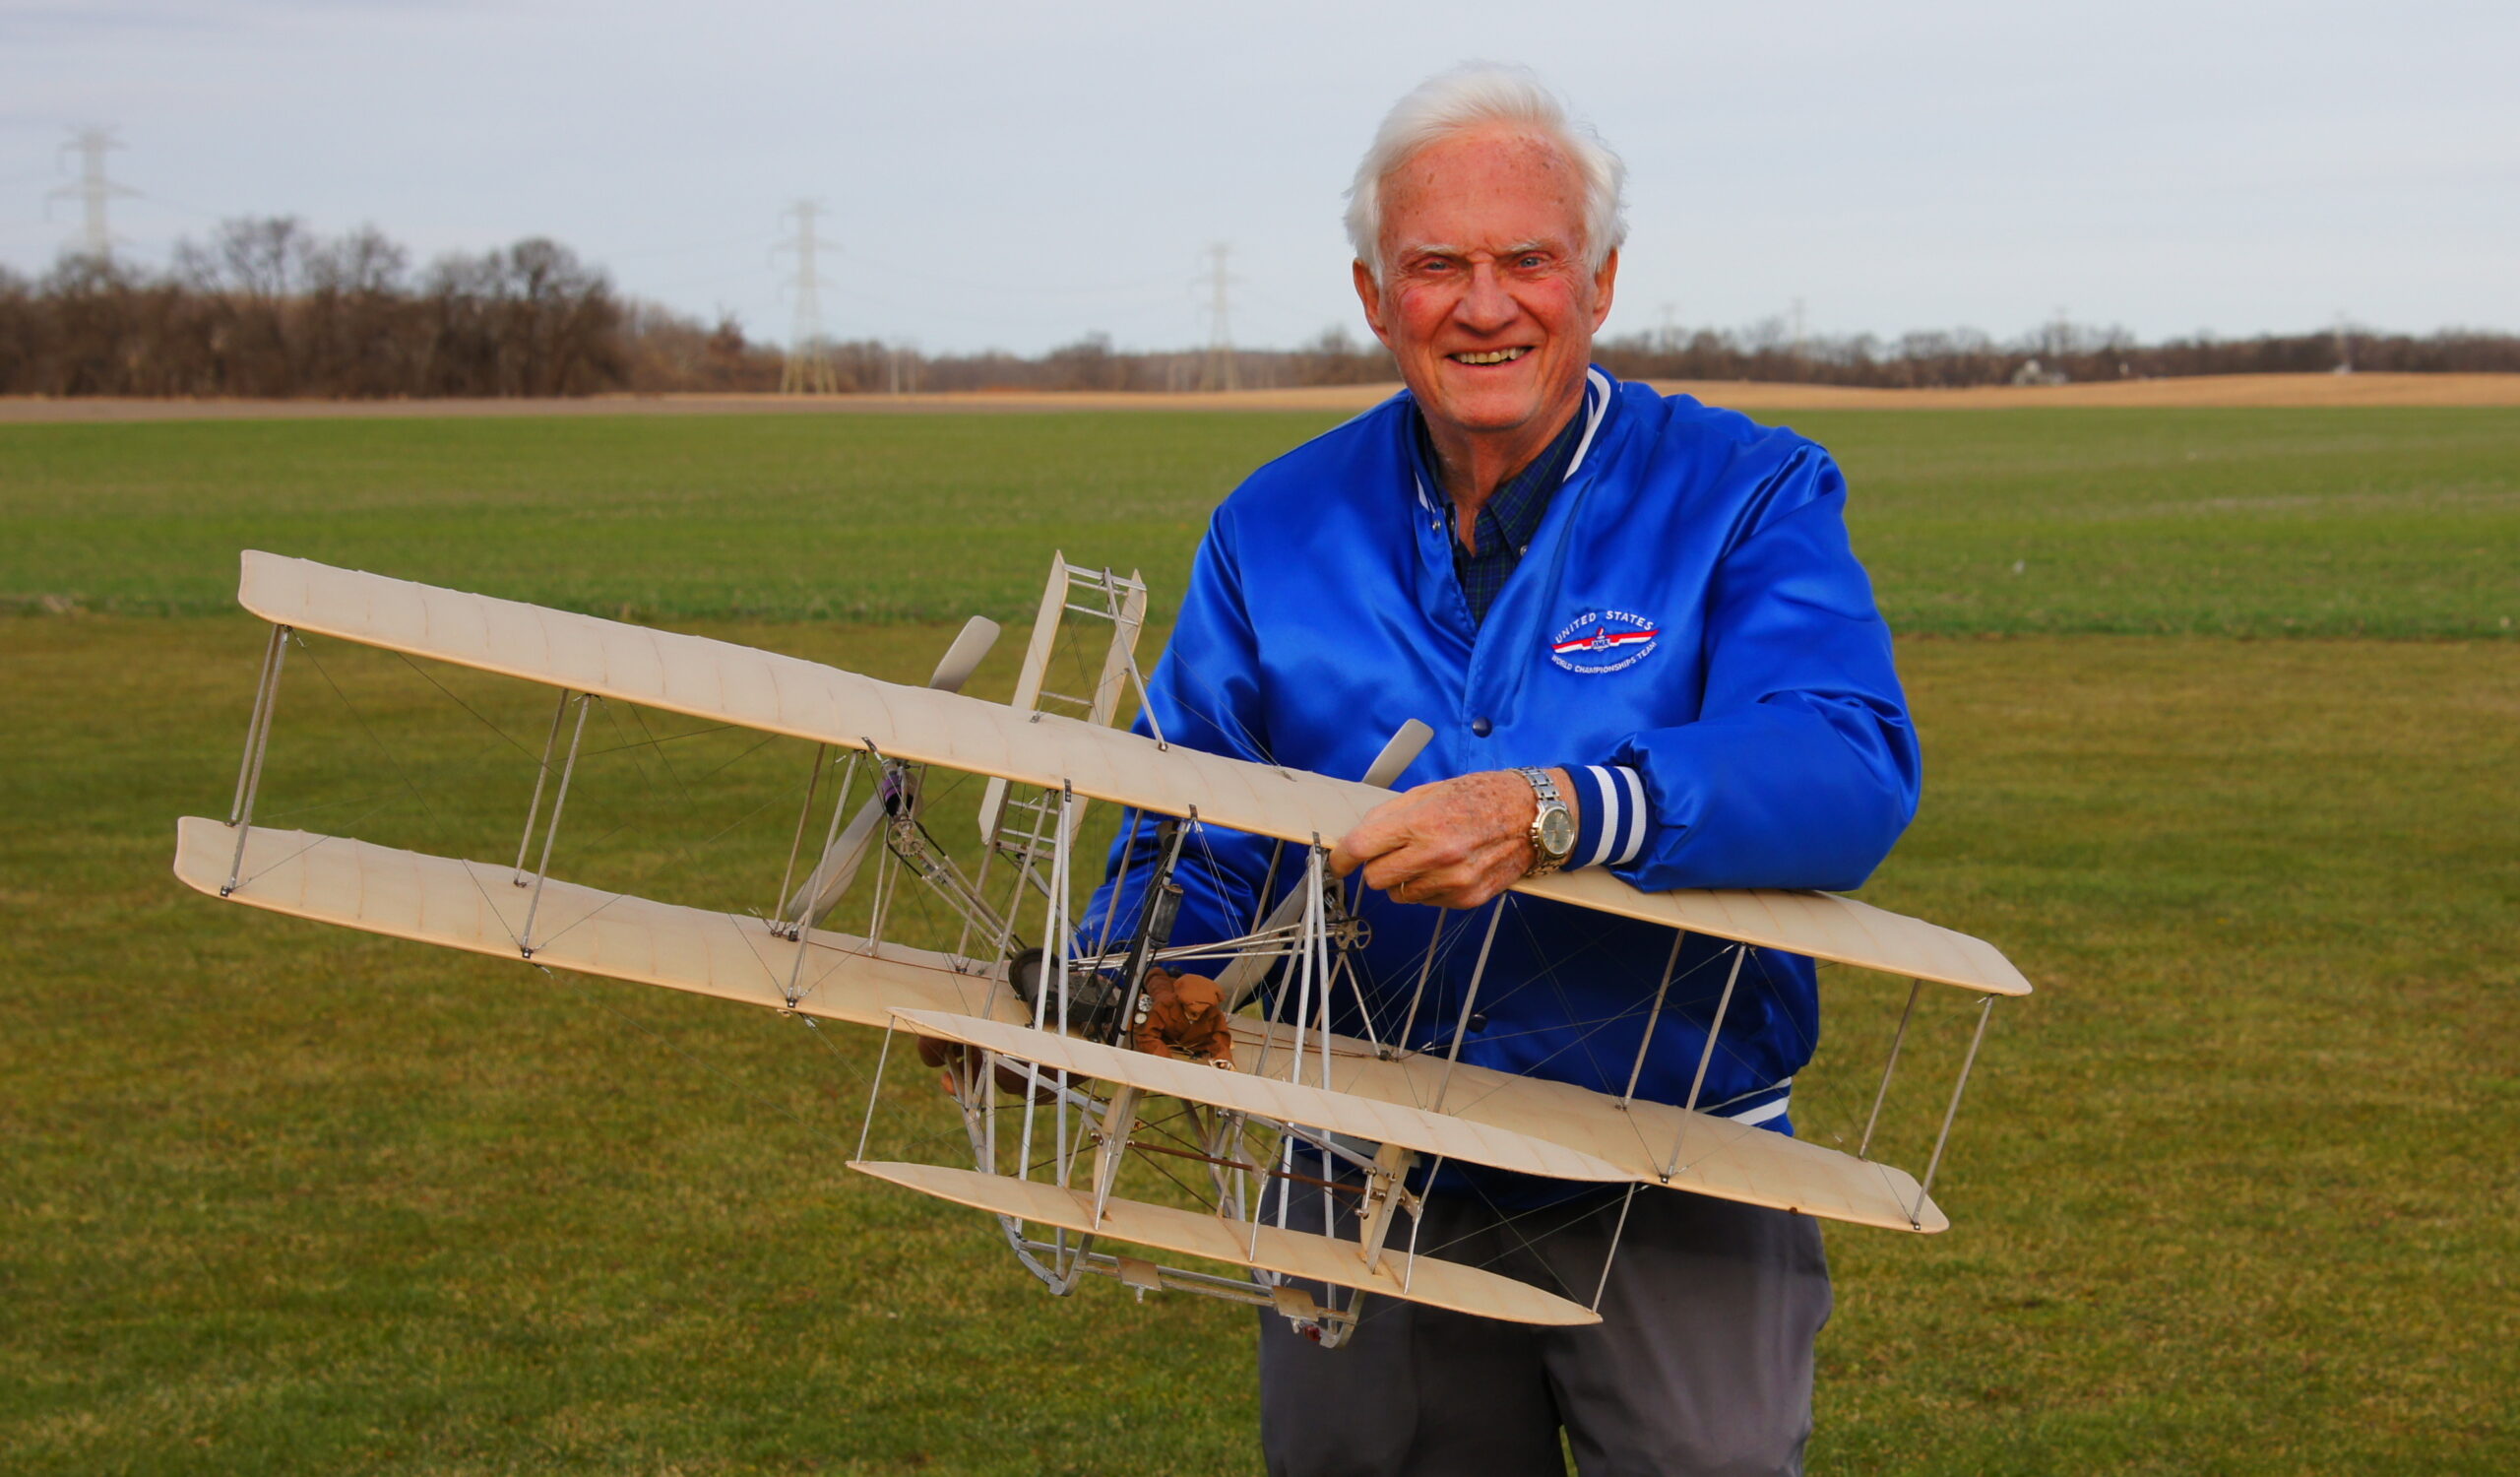 Wright Flyer 1 Easy Built Models #D10 Balsa Wood Model Airplane Kit 